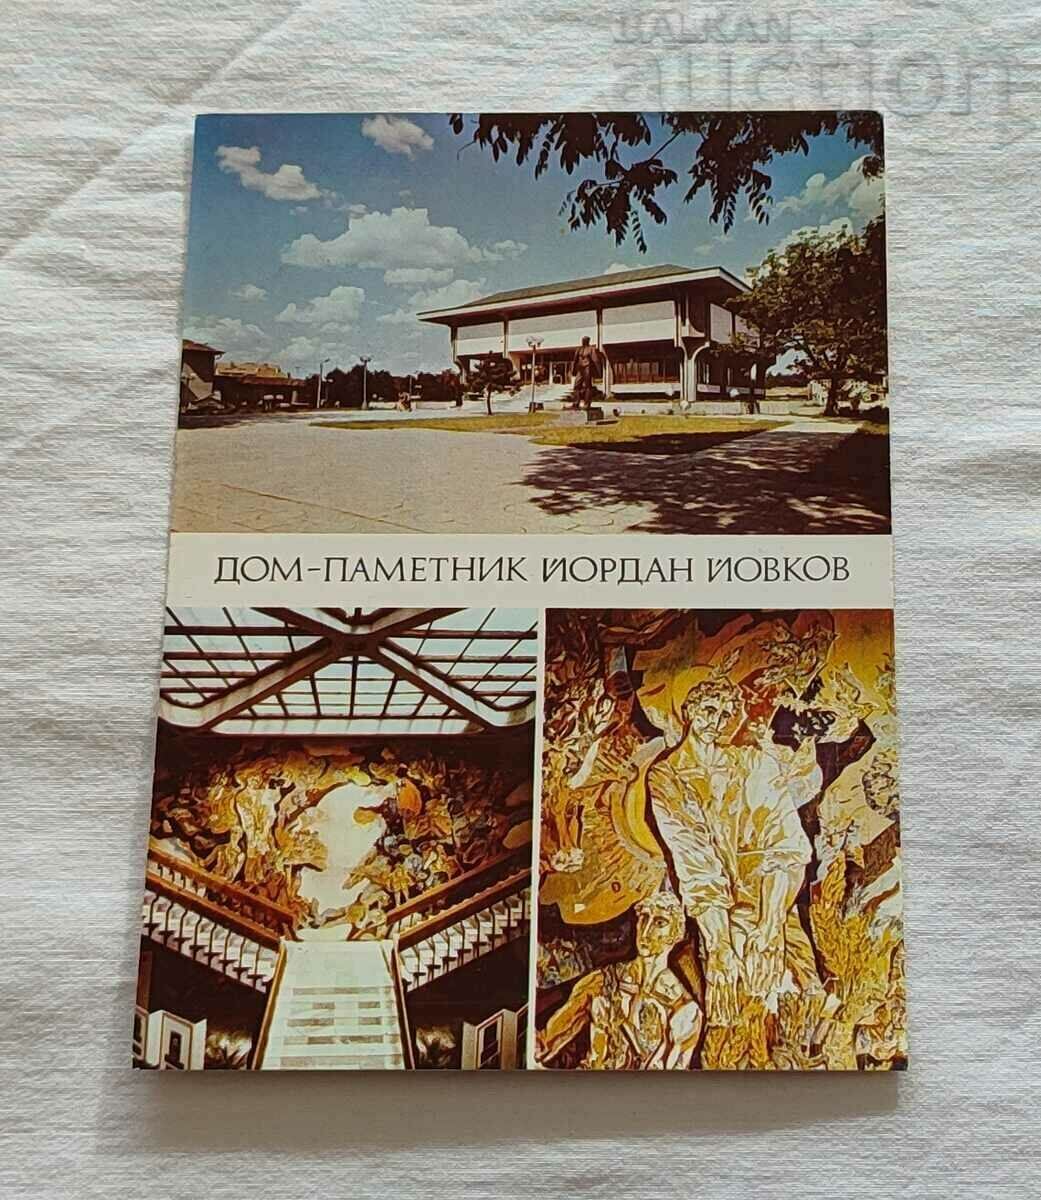 TOLBUKHIN/DOBRICH MEMORIAL HOUSE "Y. YOVKOV" 1983 P.K.